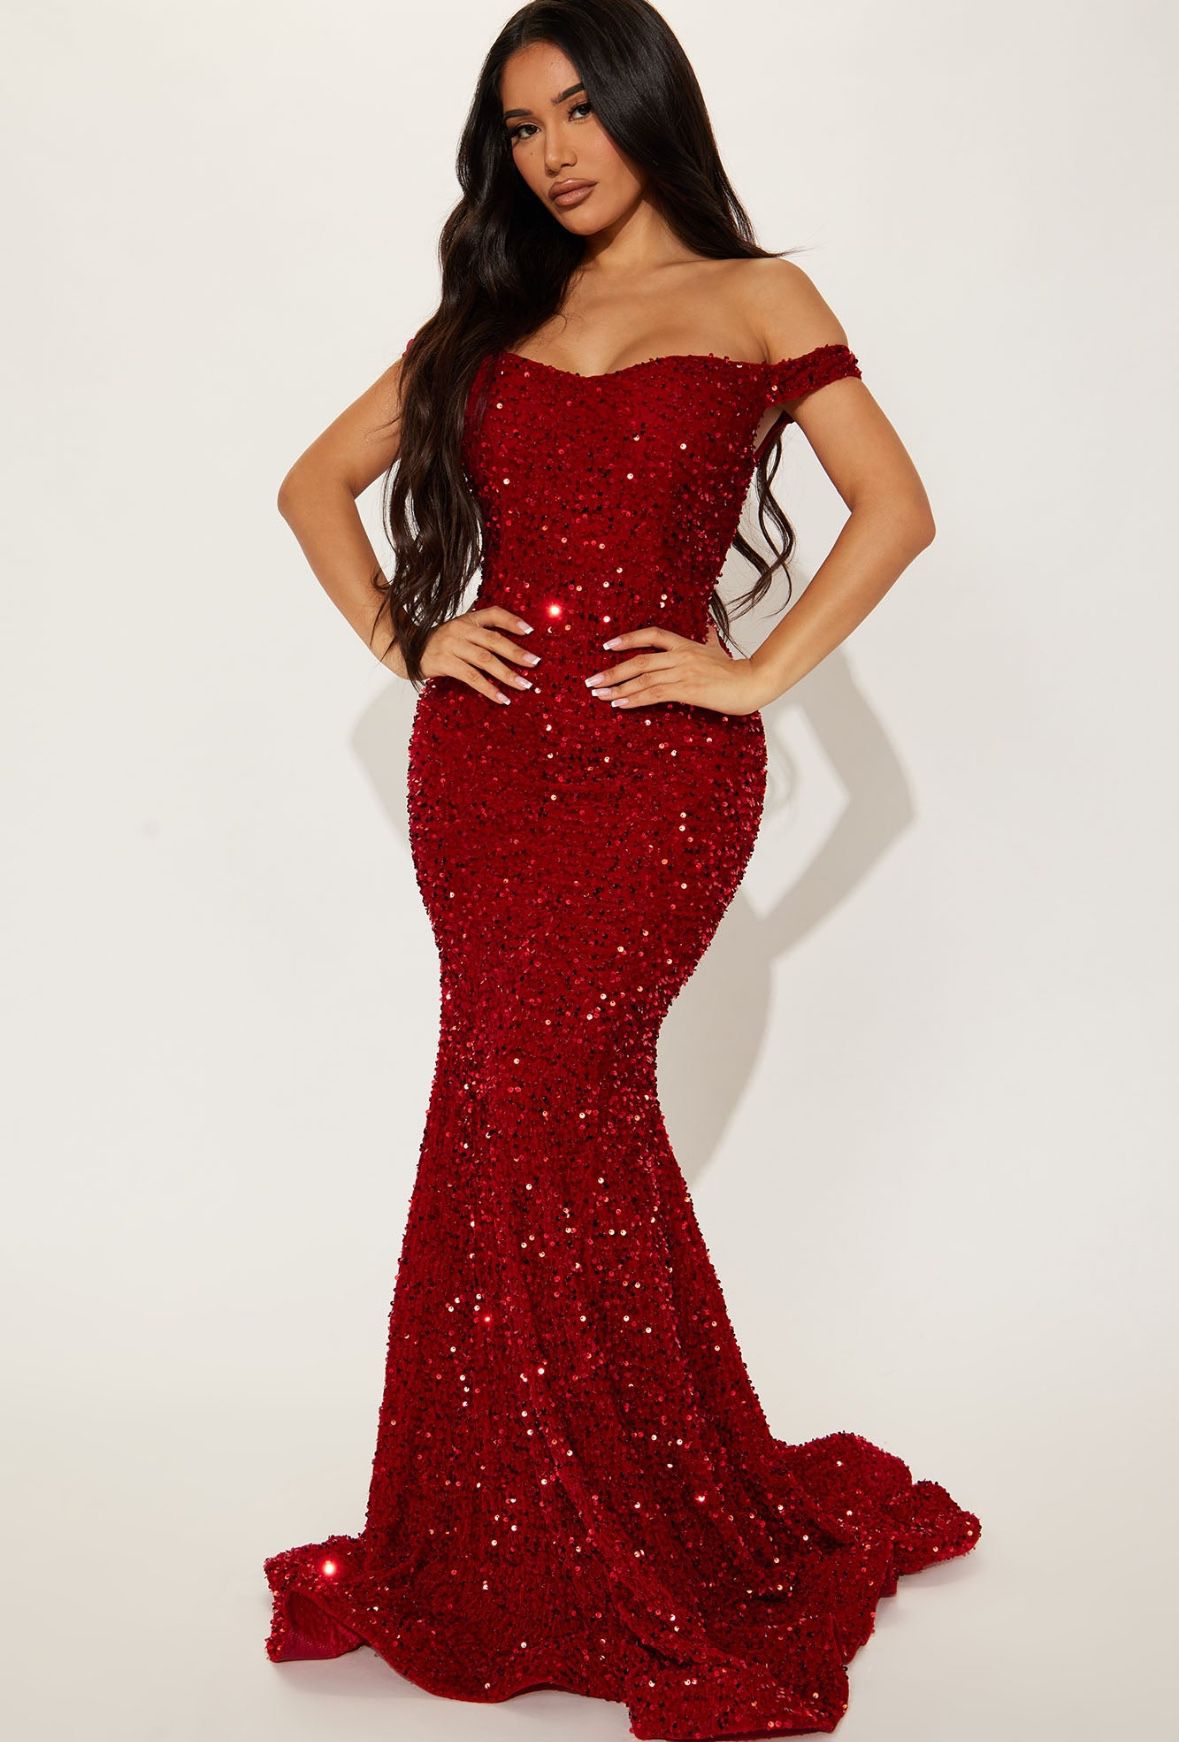 Red dress/ prom  dress 